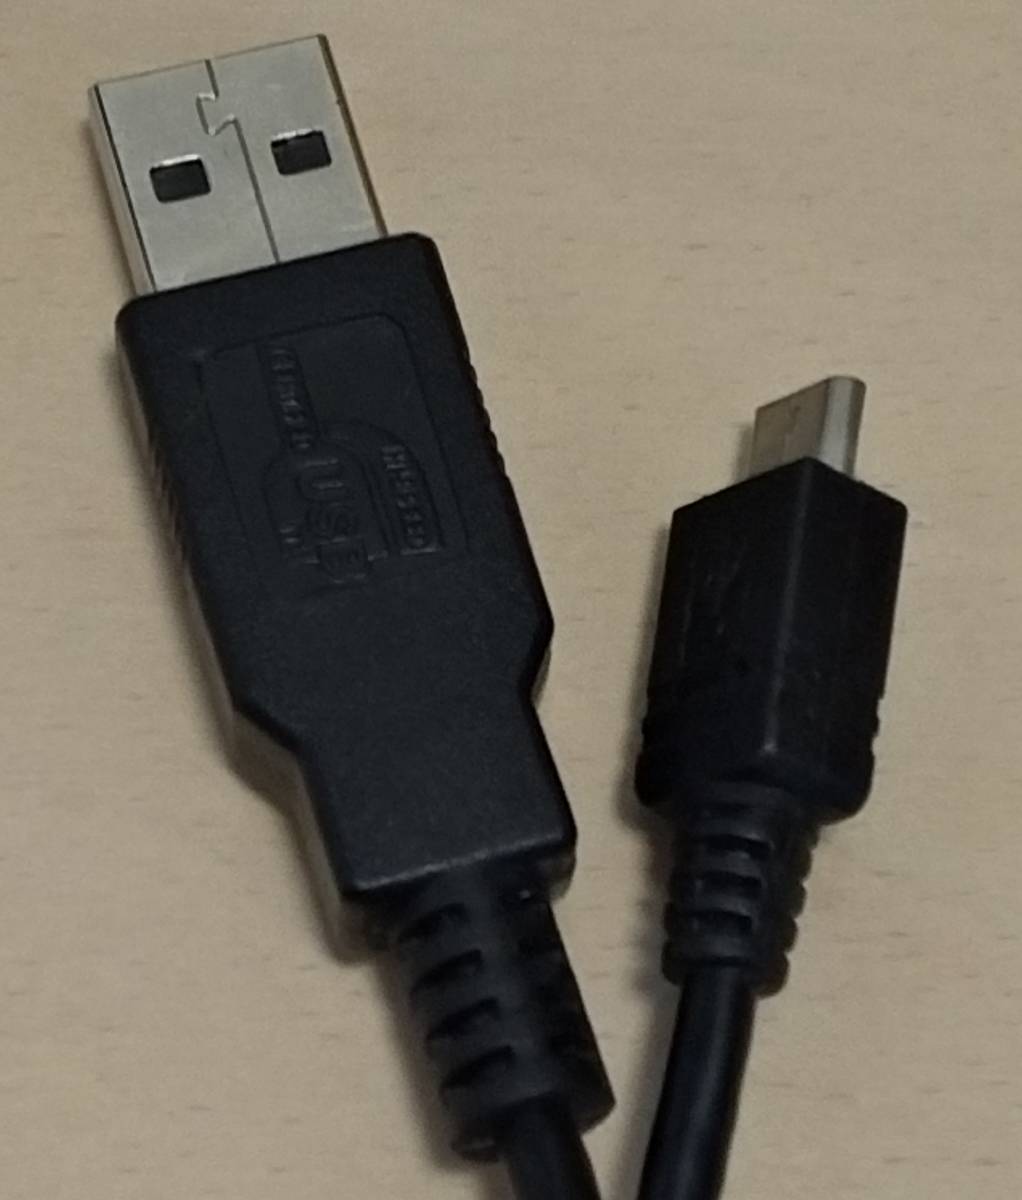 USBケーブル タイプA-マイクロB(microB) 長さ30cm 黒 同一ケーブル2本セット